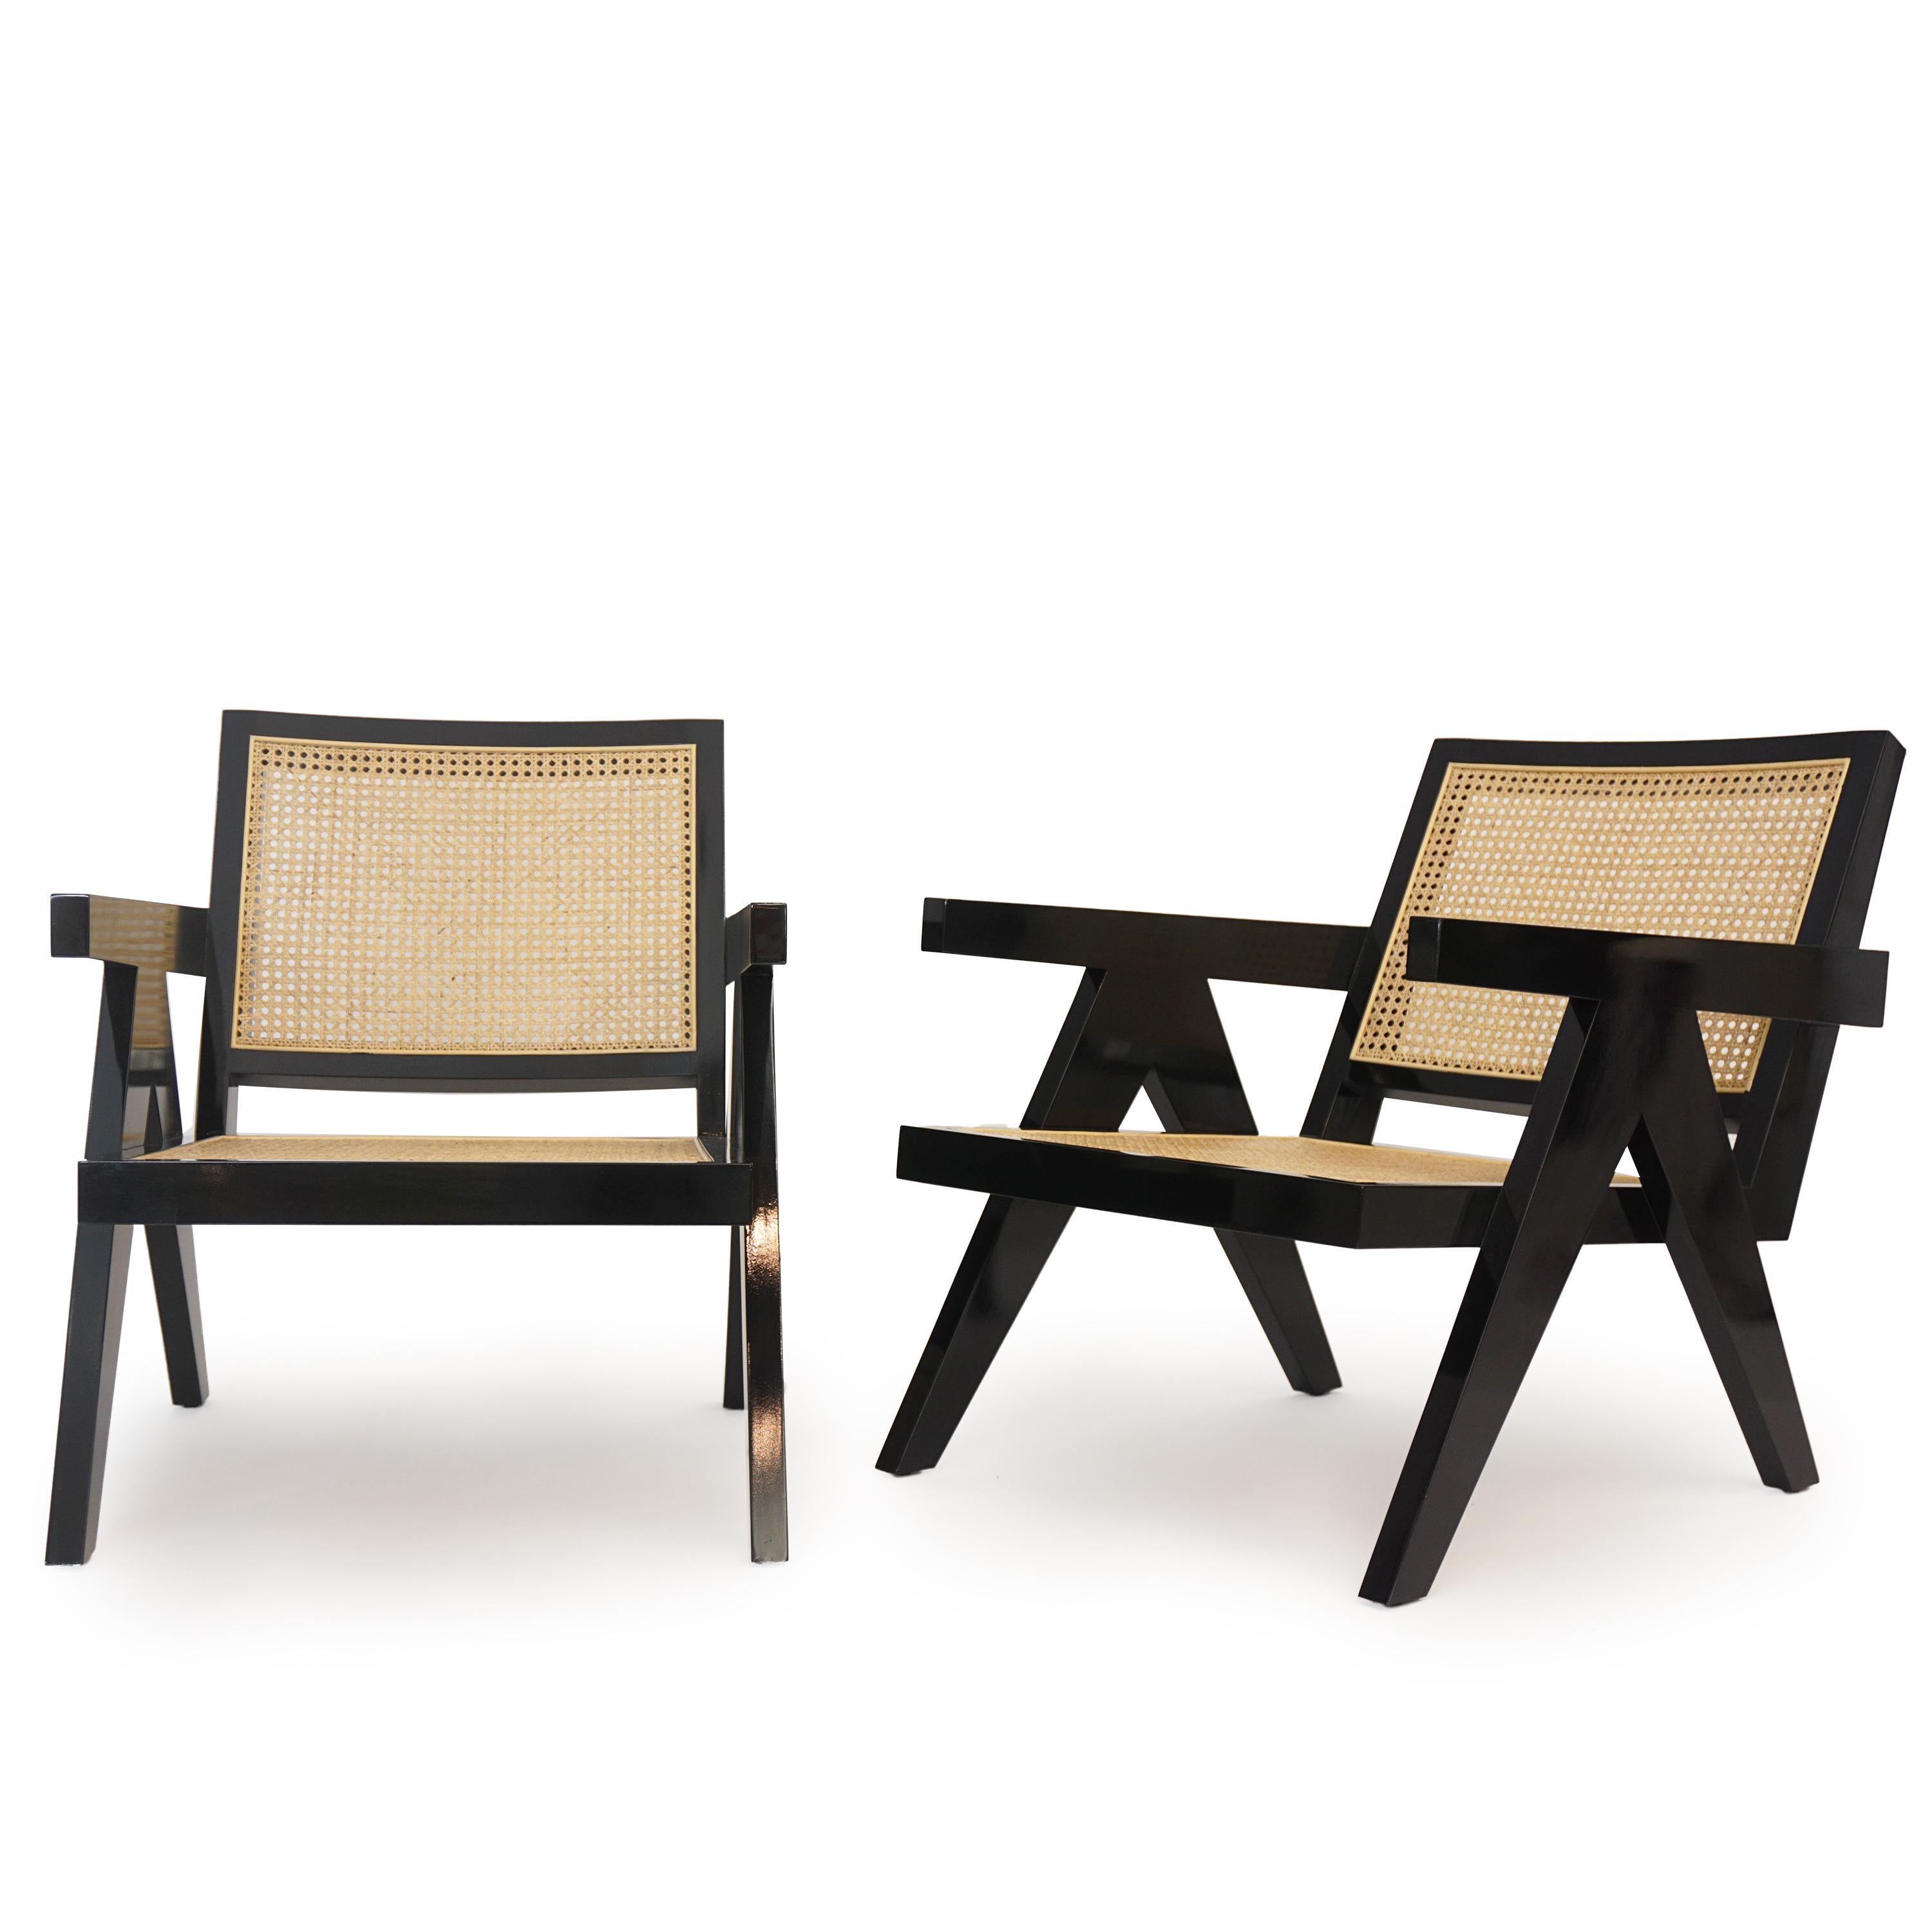 Schwarzer Sessel auf Bestellung:: hergestellt aus natürlichem Rattan und schwarz lackiertem Mahagoniholz. 

Abmessungen: Außen - 28